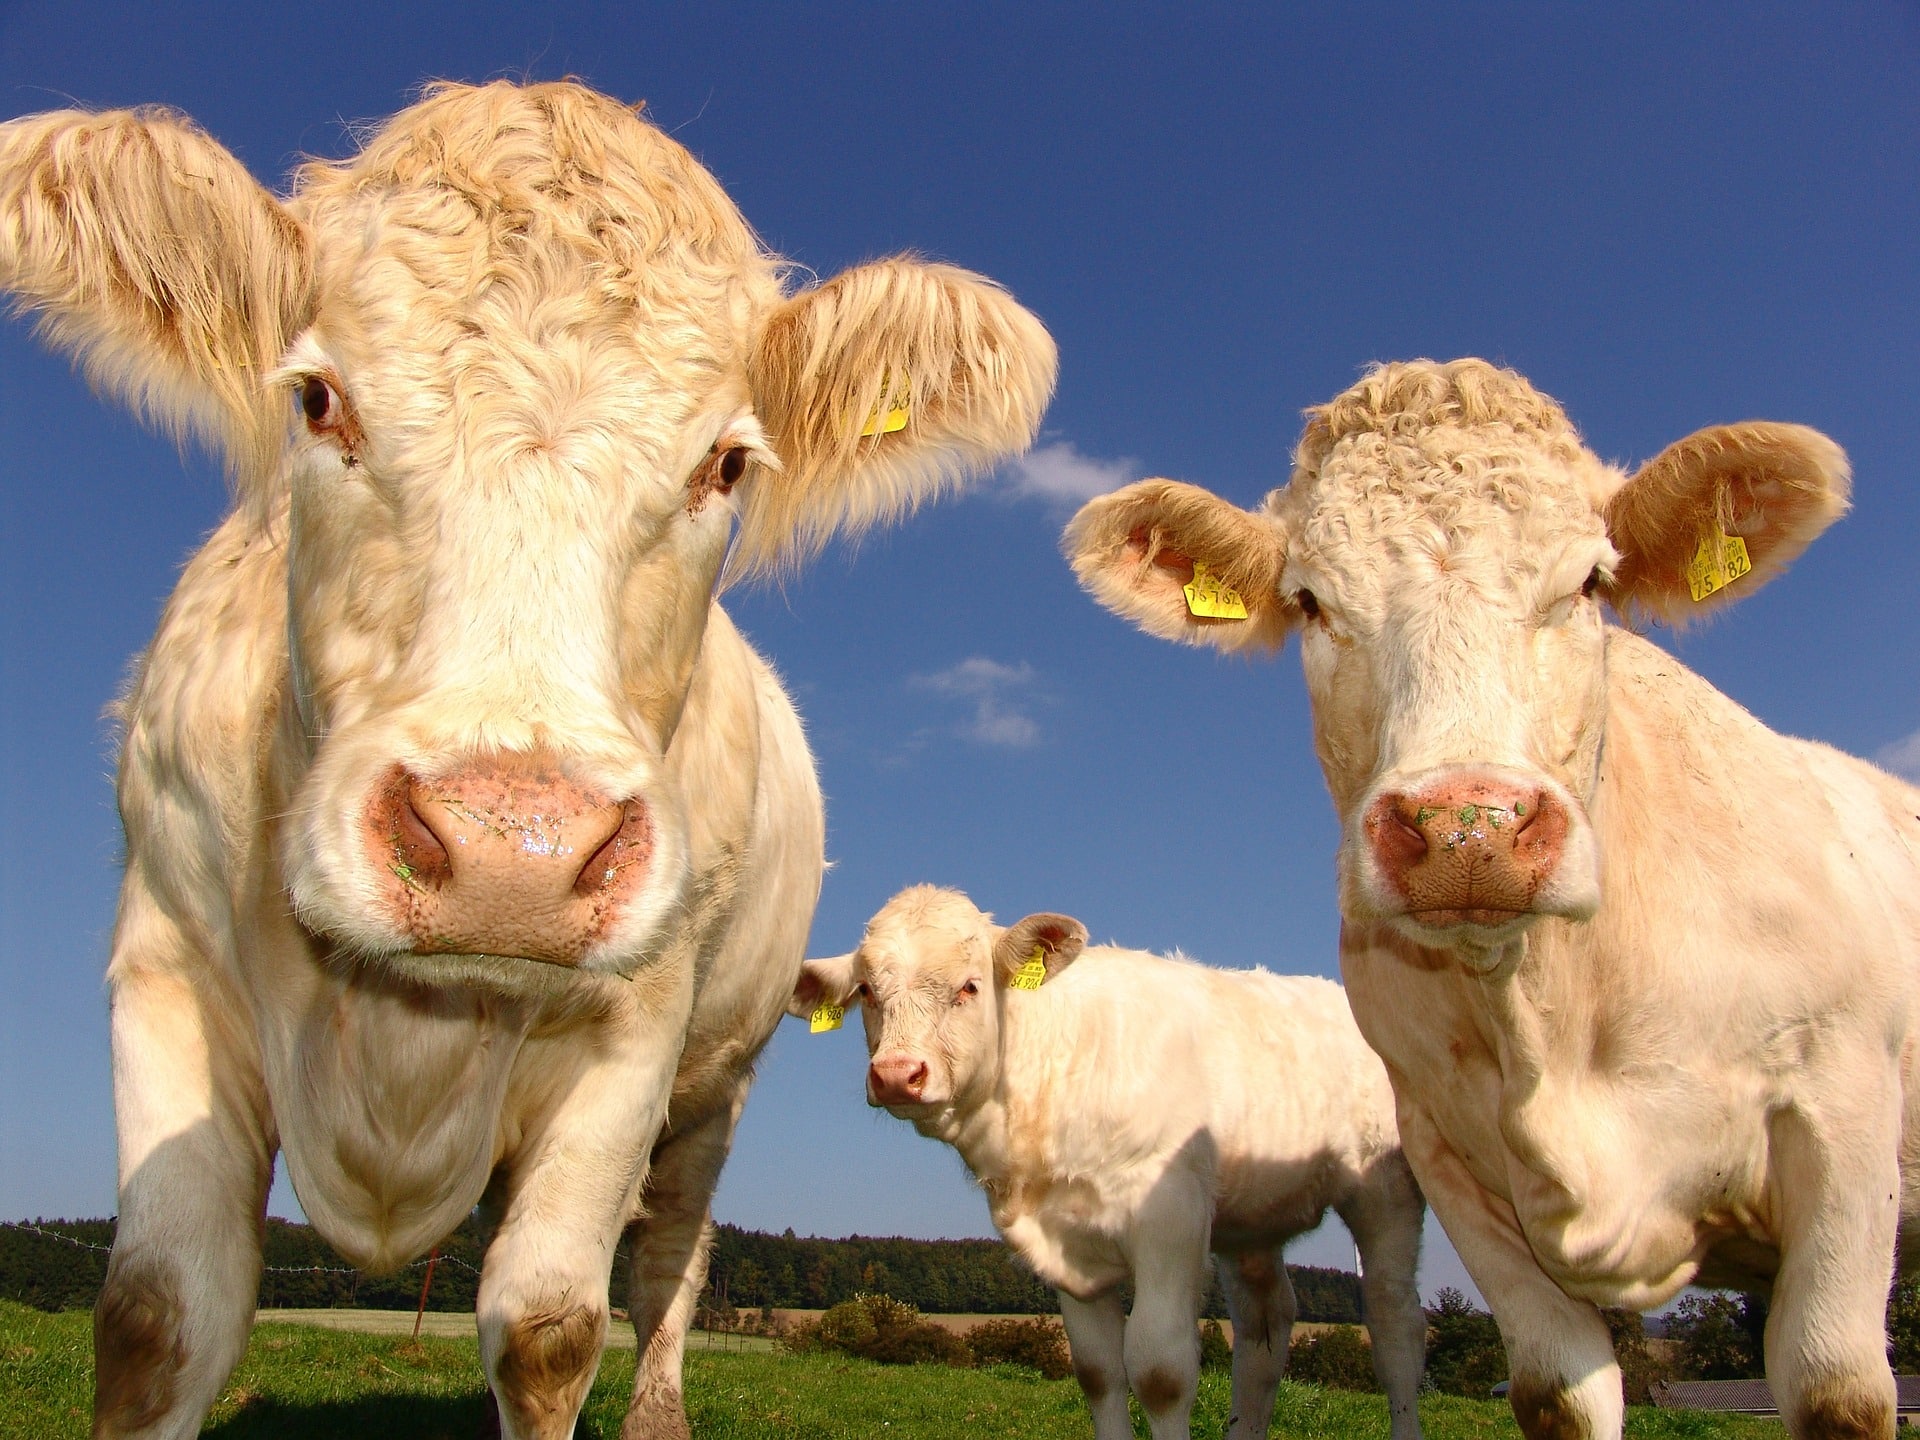 mucche a basse emissioni cinque gusti food magazine